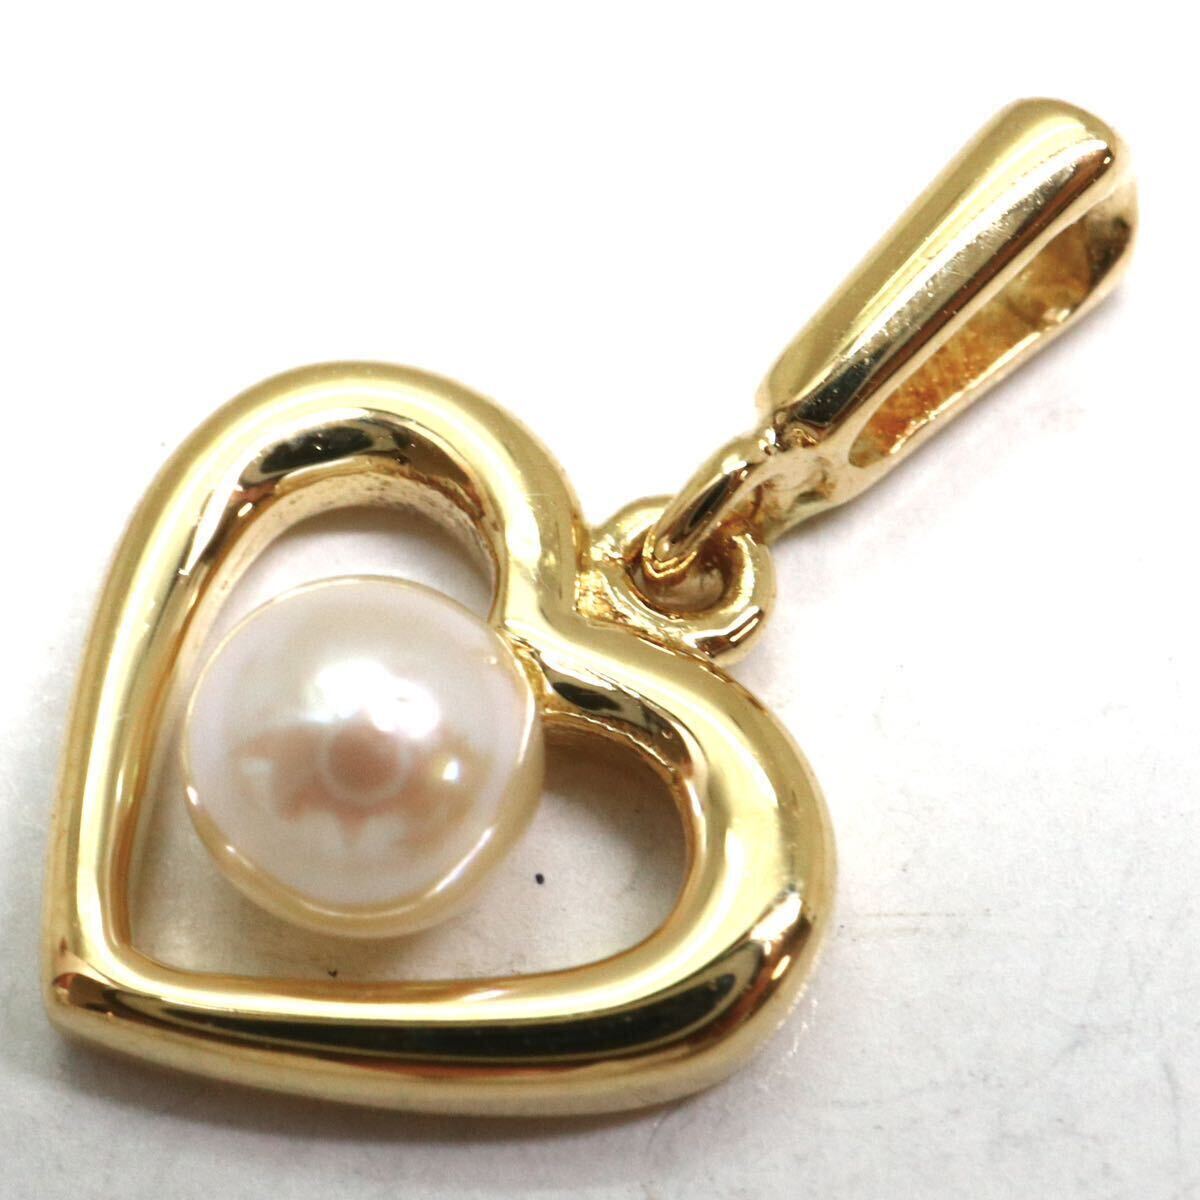 MIKIMOTO(ミキモト)箱付き!!テリ良し!!《K18 アコヤ本真珠ペンダントトップ》M 約0.7g pendant パール pearl jewelry ジュエリー DF6/DI6の画像5